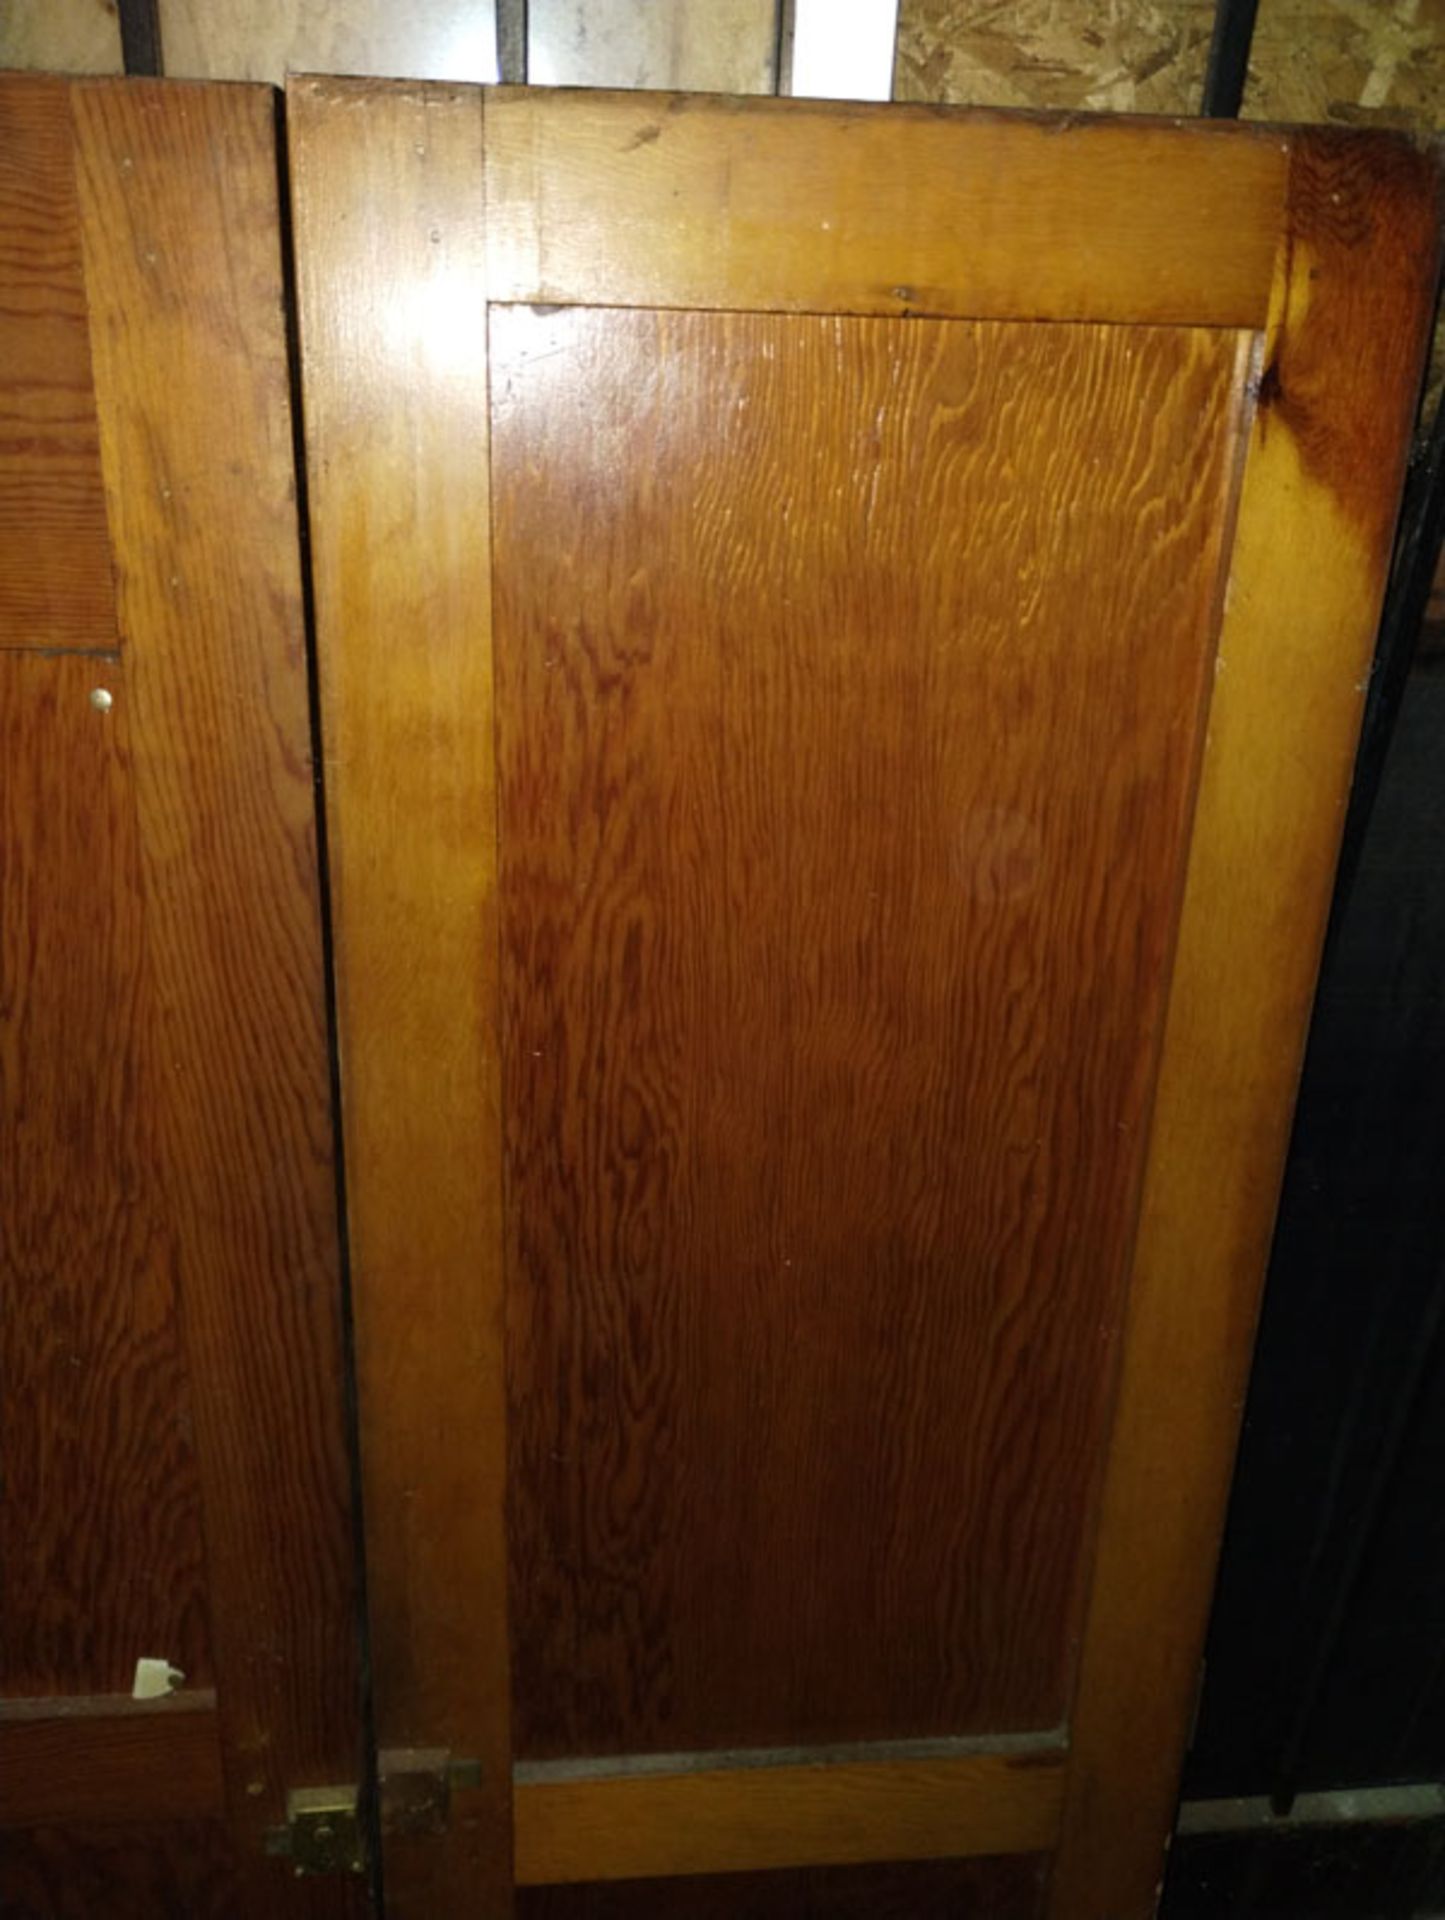 SET OF DOUBLE WOOD DOORS 20" X 72" - Image 3 of 6